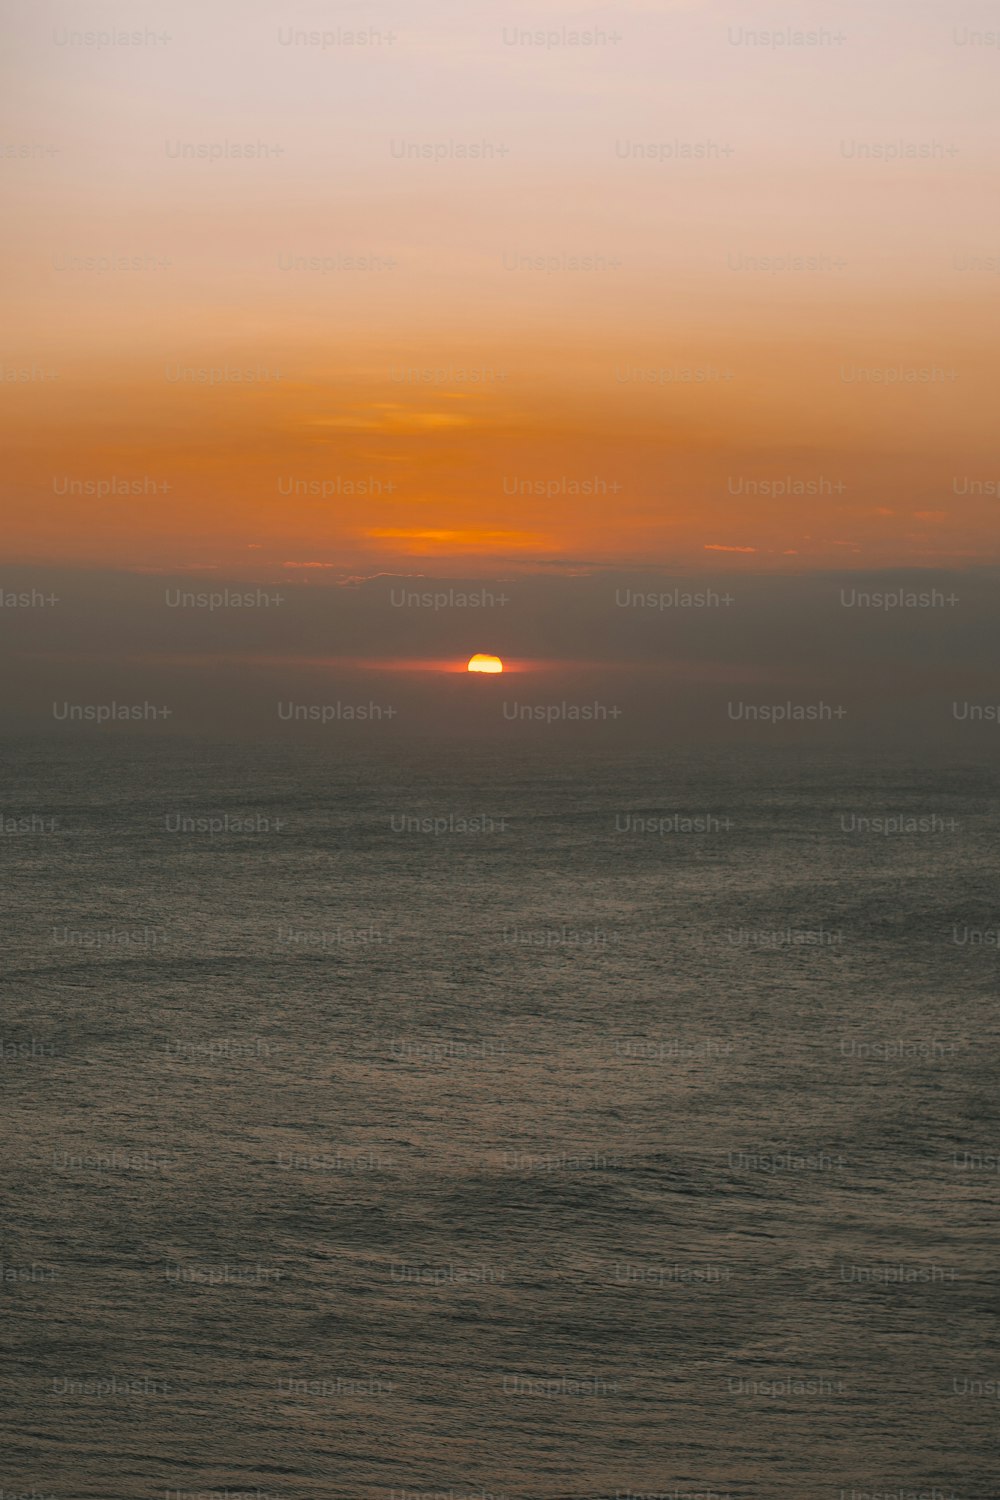 Il sole sta tramontando sull'oceano in una giornata nebbiosa